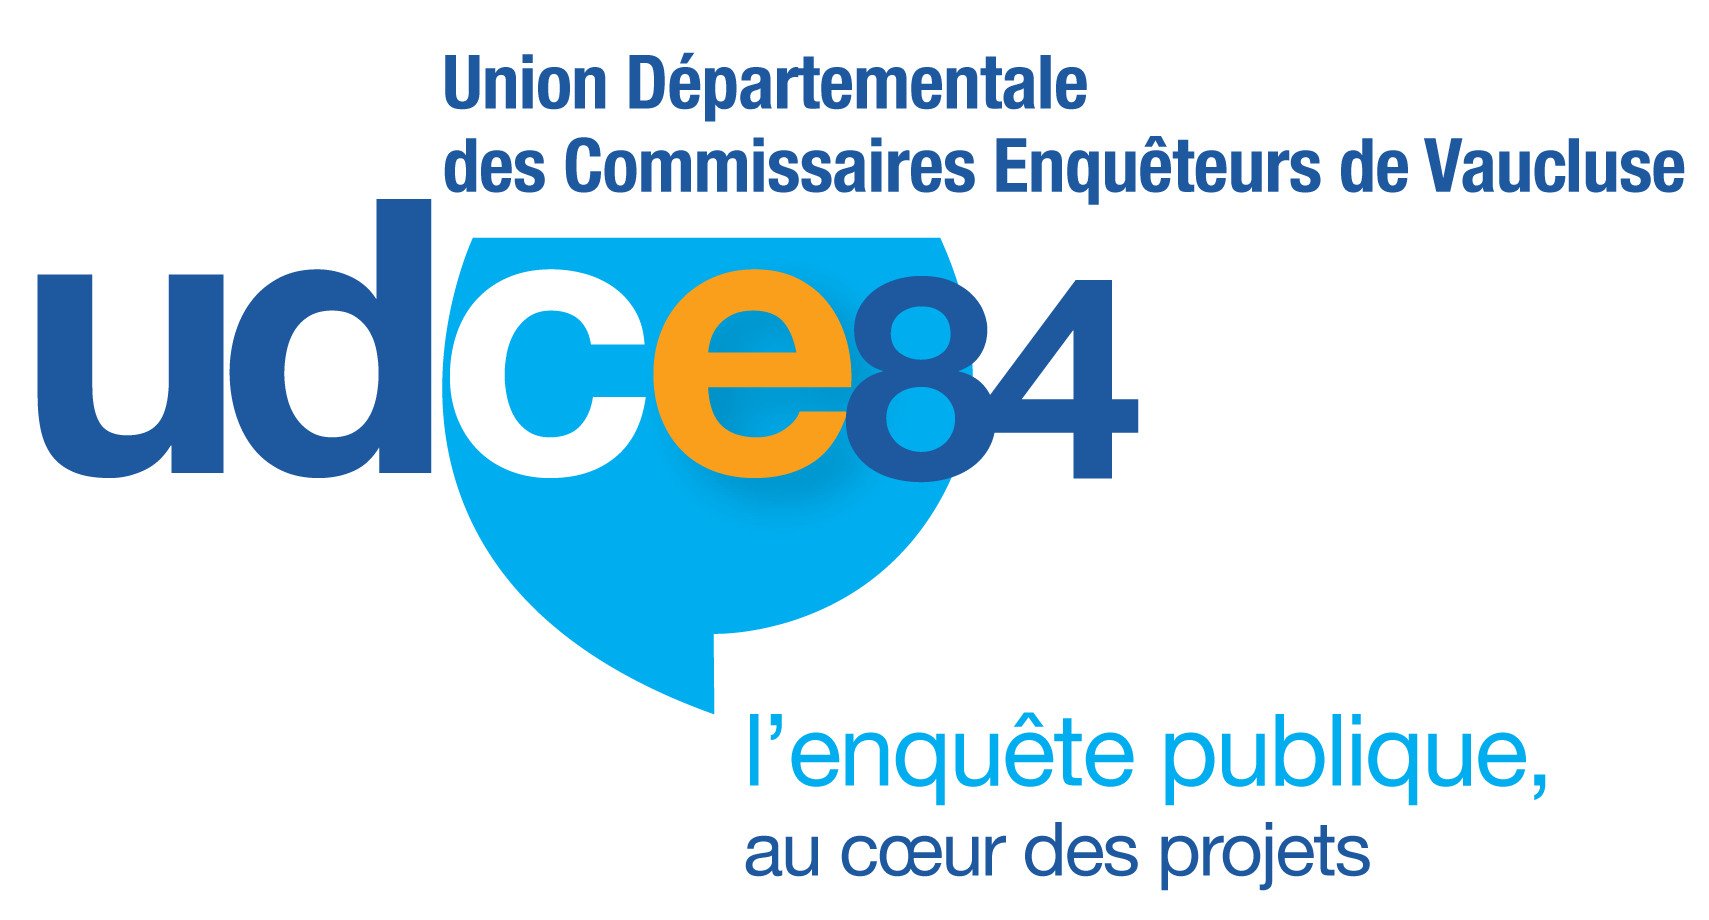 Union Départementale des Commissaires Enquêteurs de Vaucluse